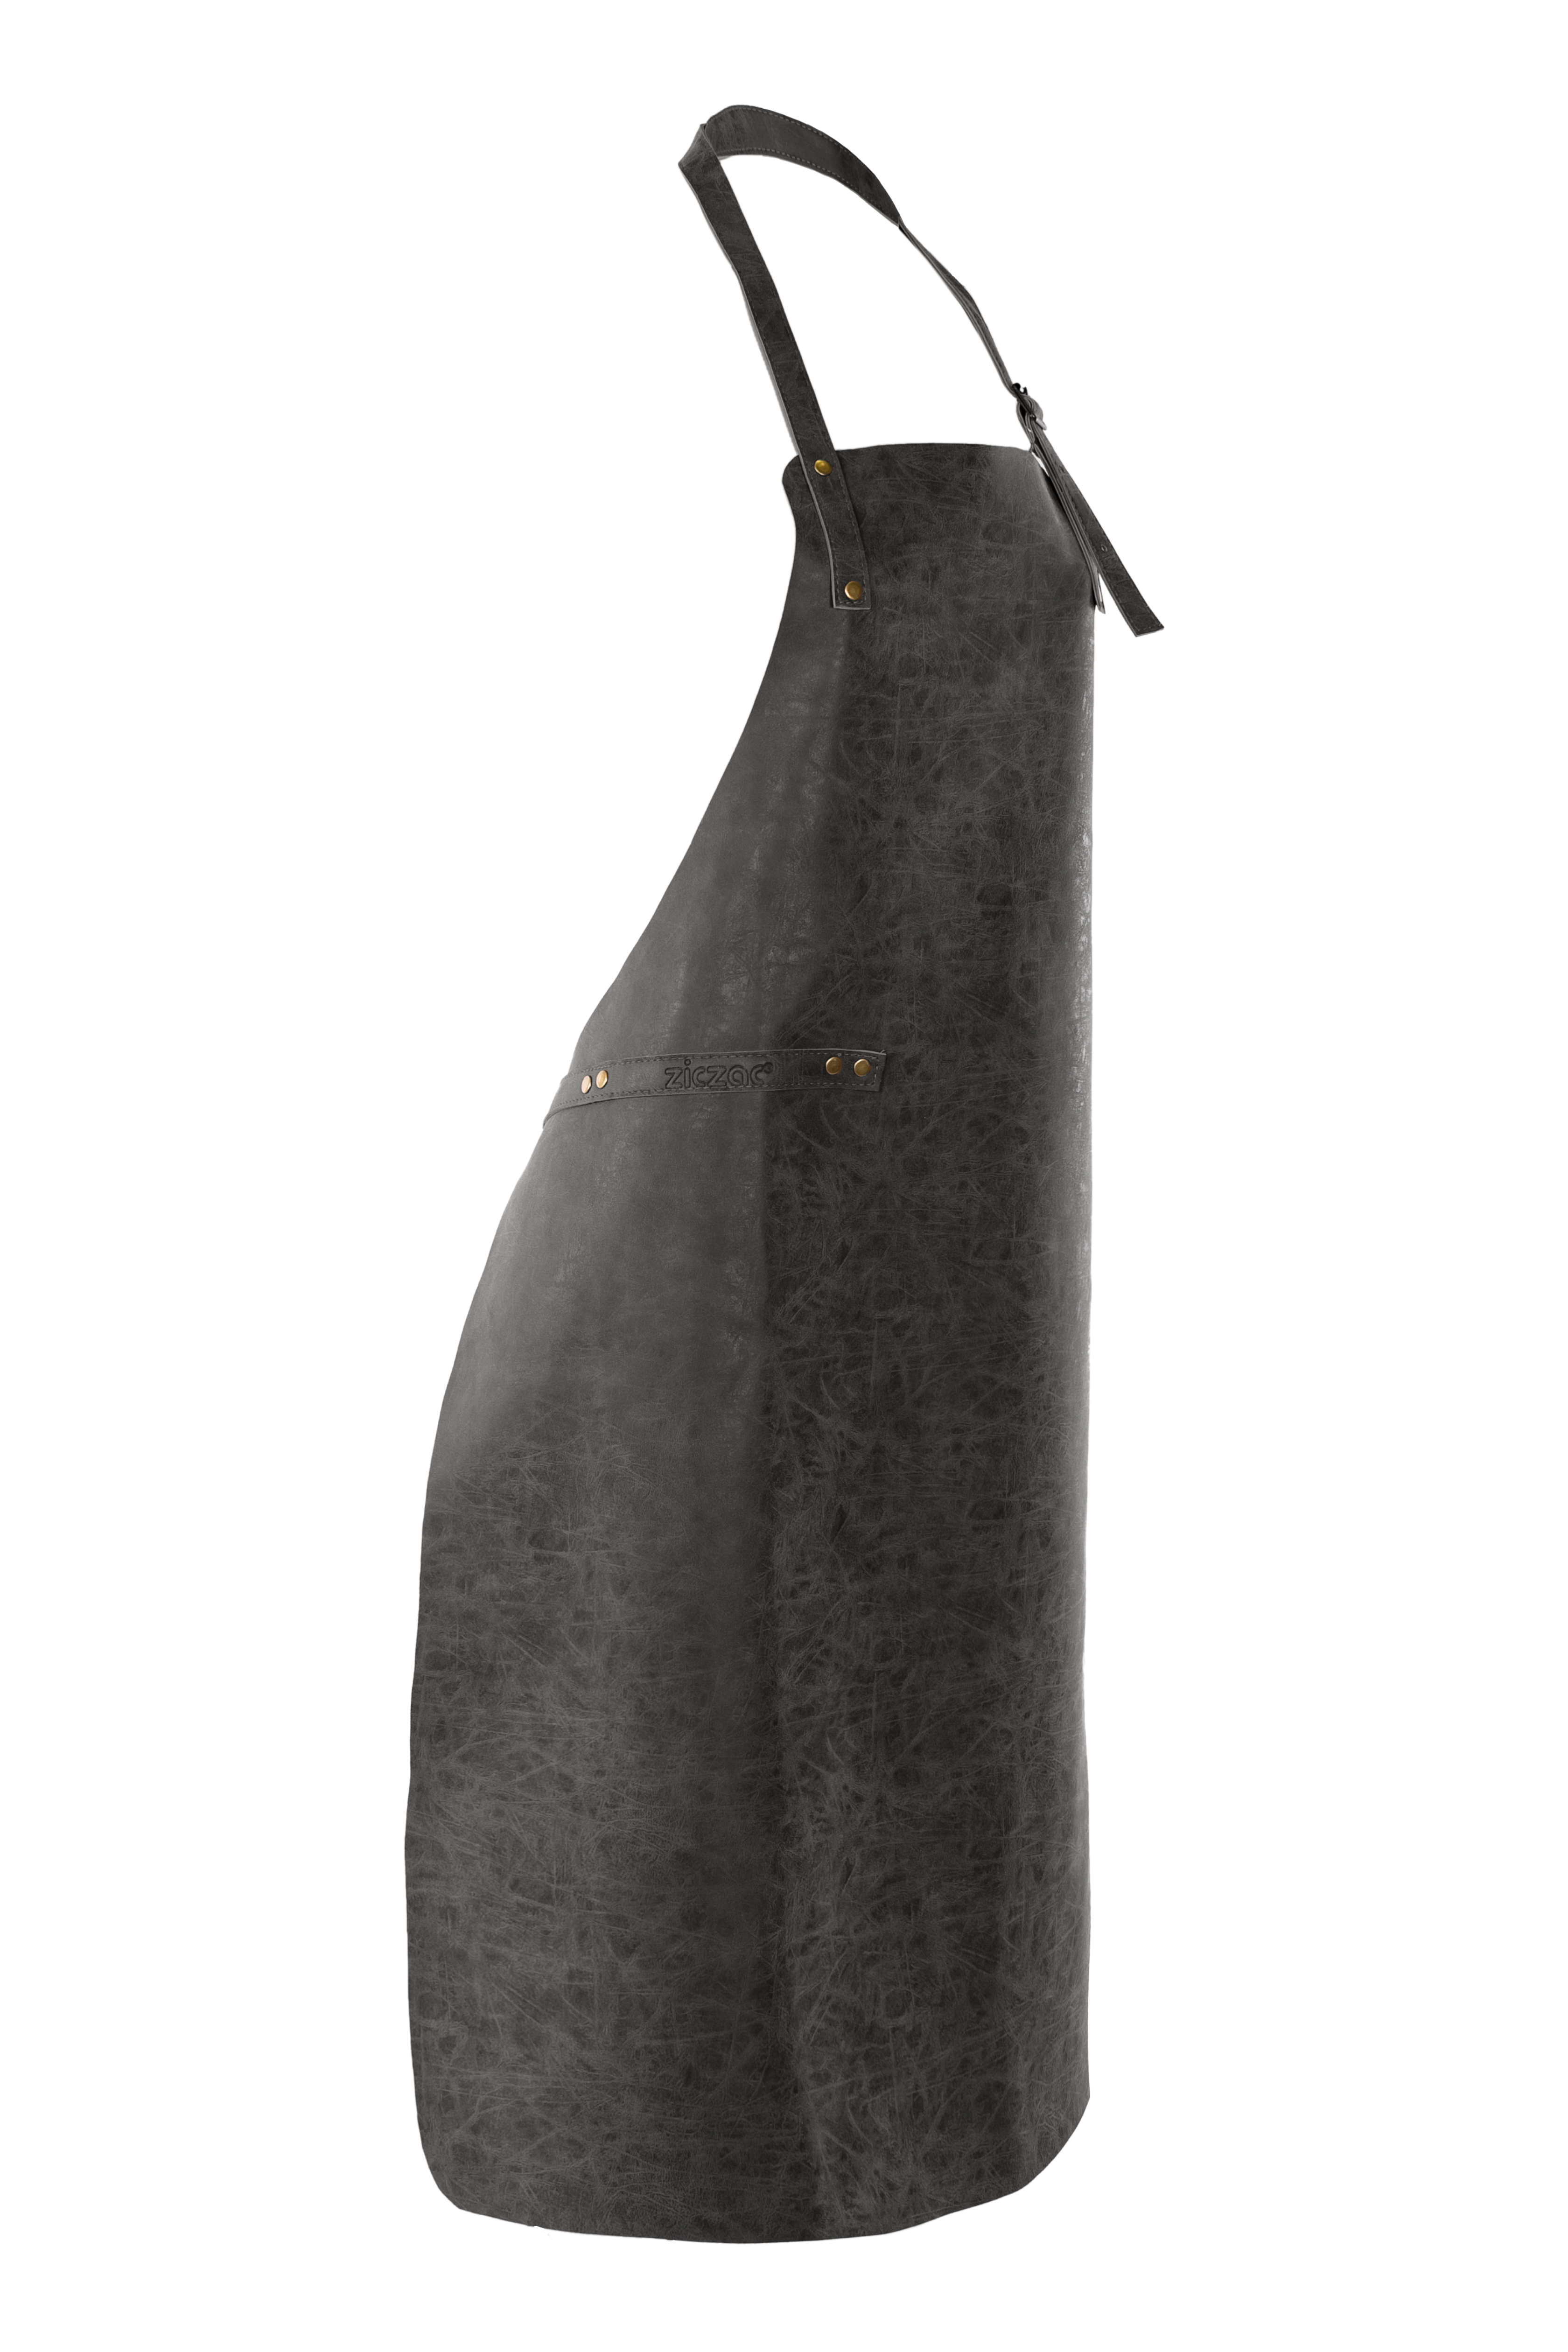 Schort TRUMAN (Towel loop - no pocket - opt. Accessory bag), 70x90 cm, black